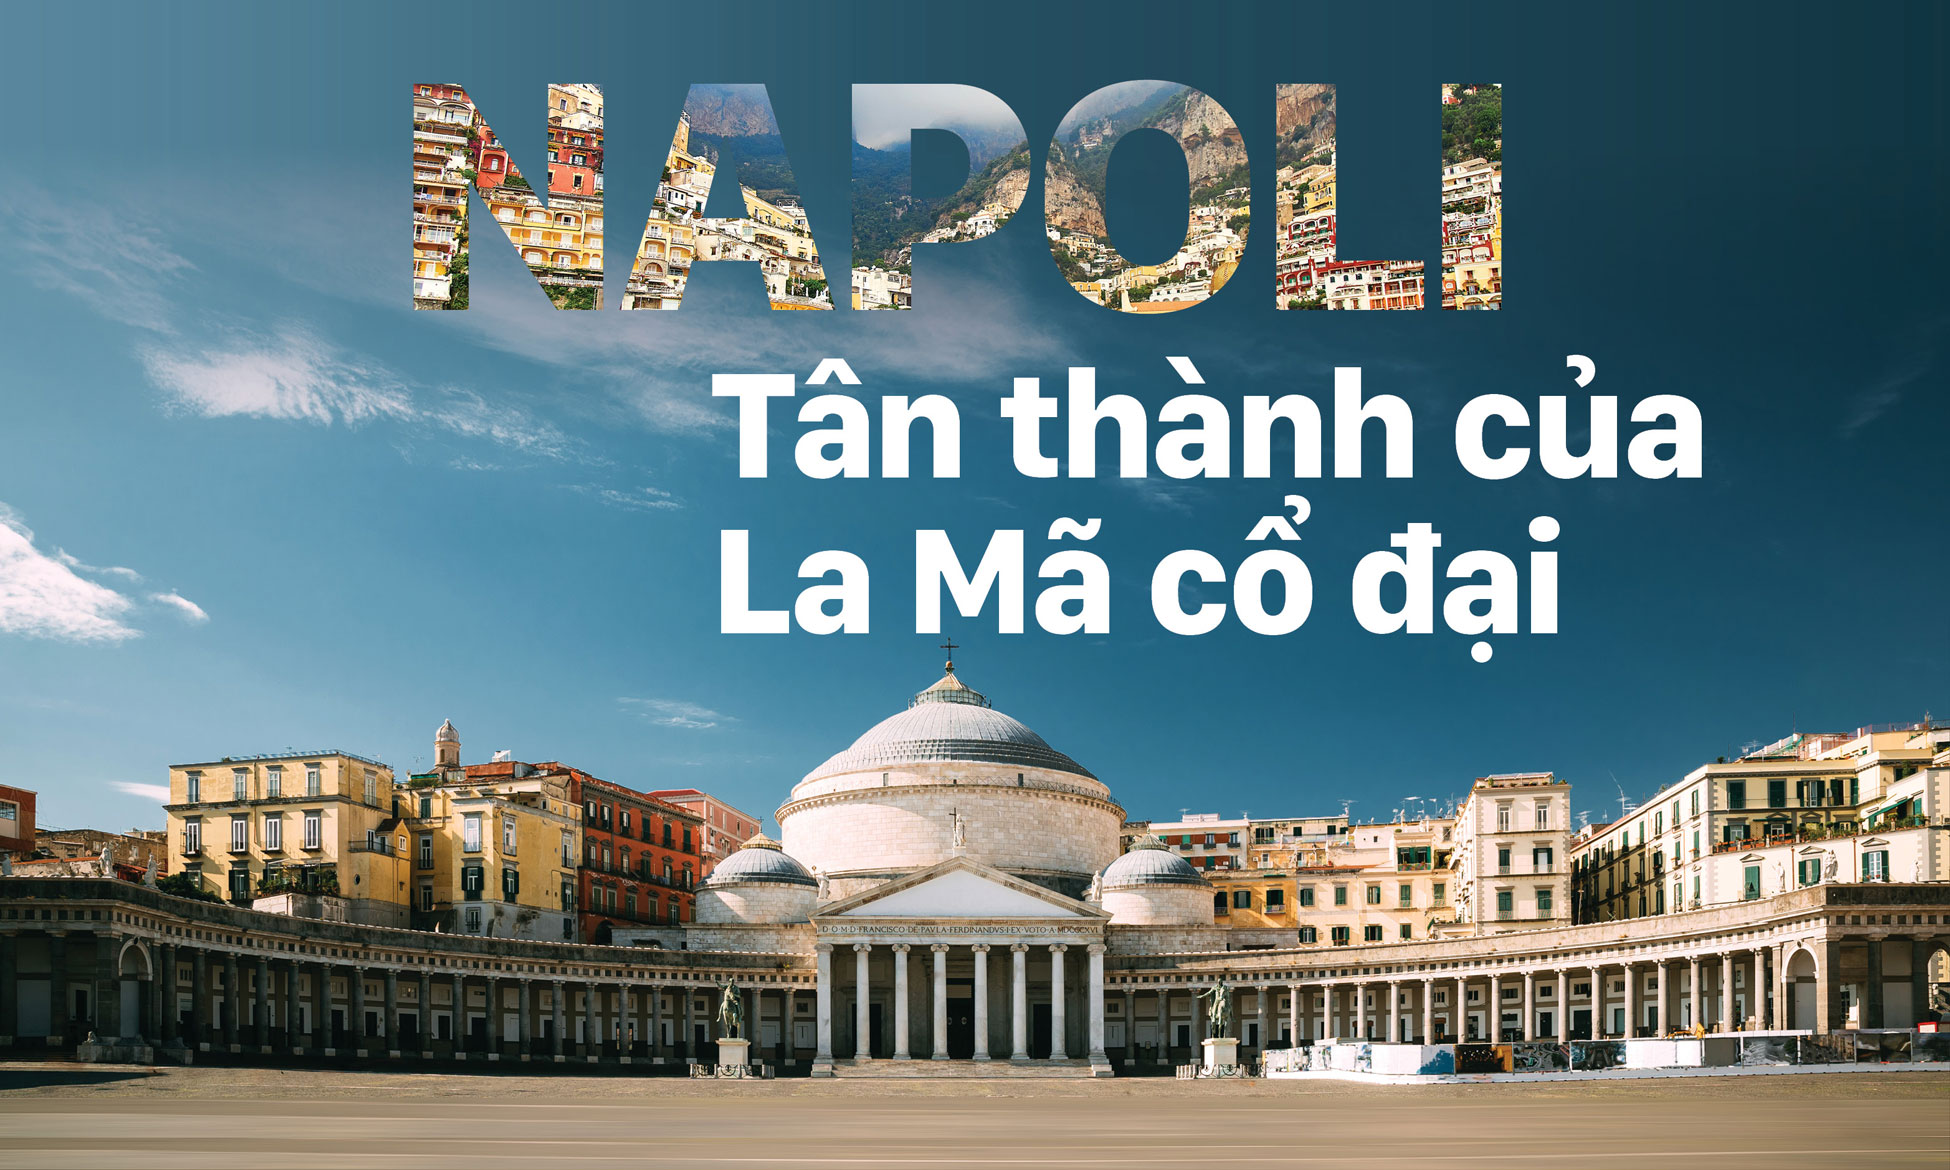 Napoli - Tân thành của La Mã cổ đại